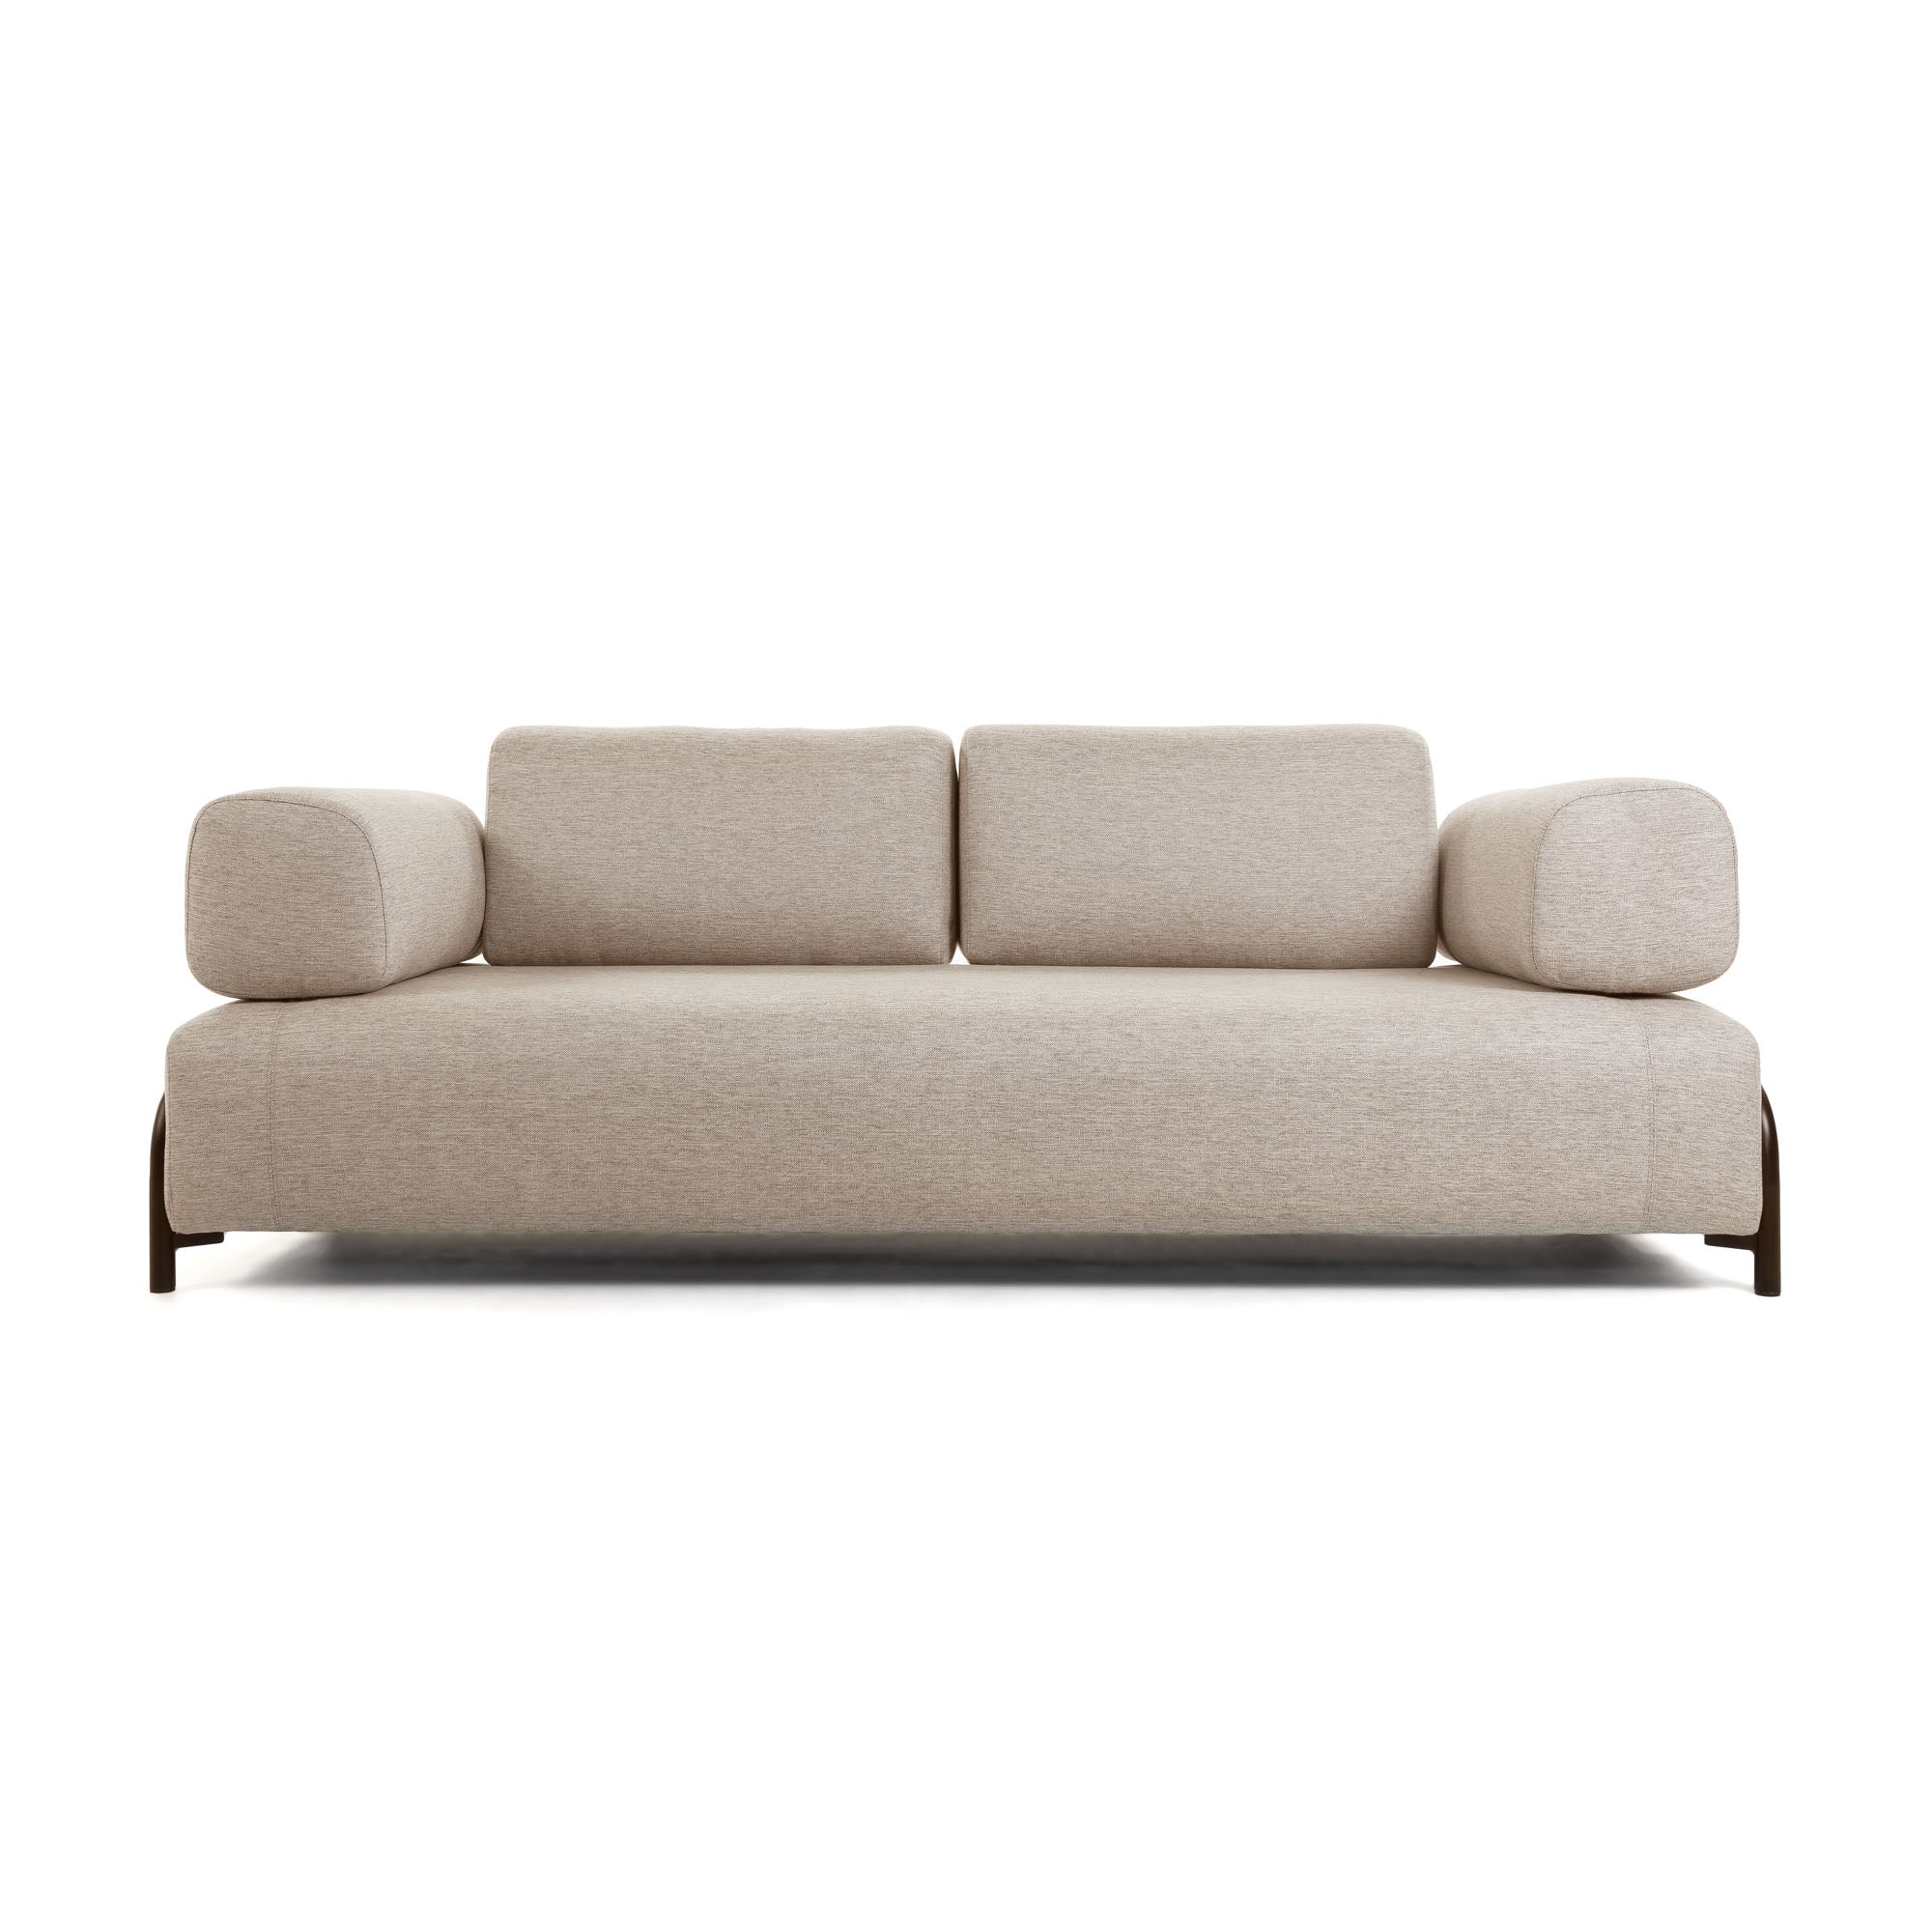 Compo 3 seater sofa in beige, 232 cm